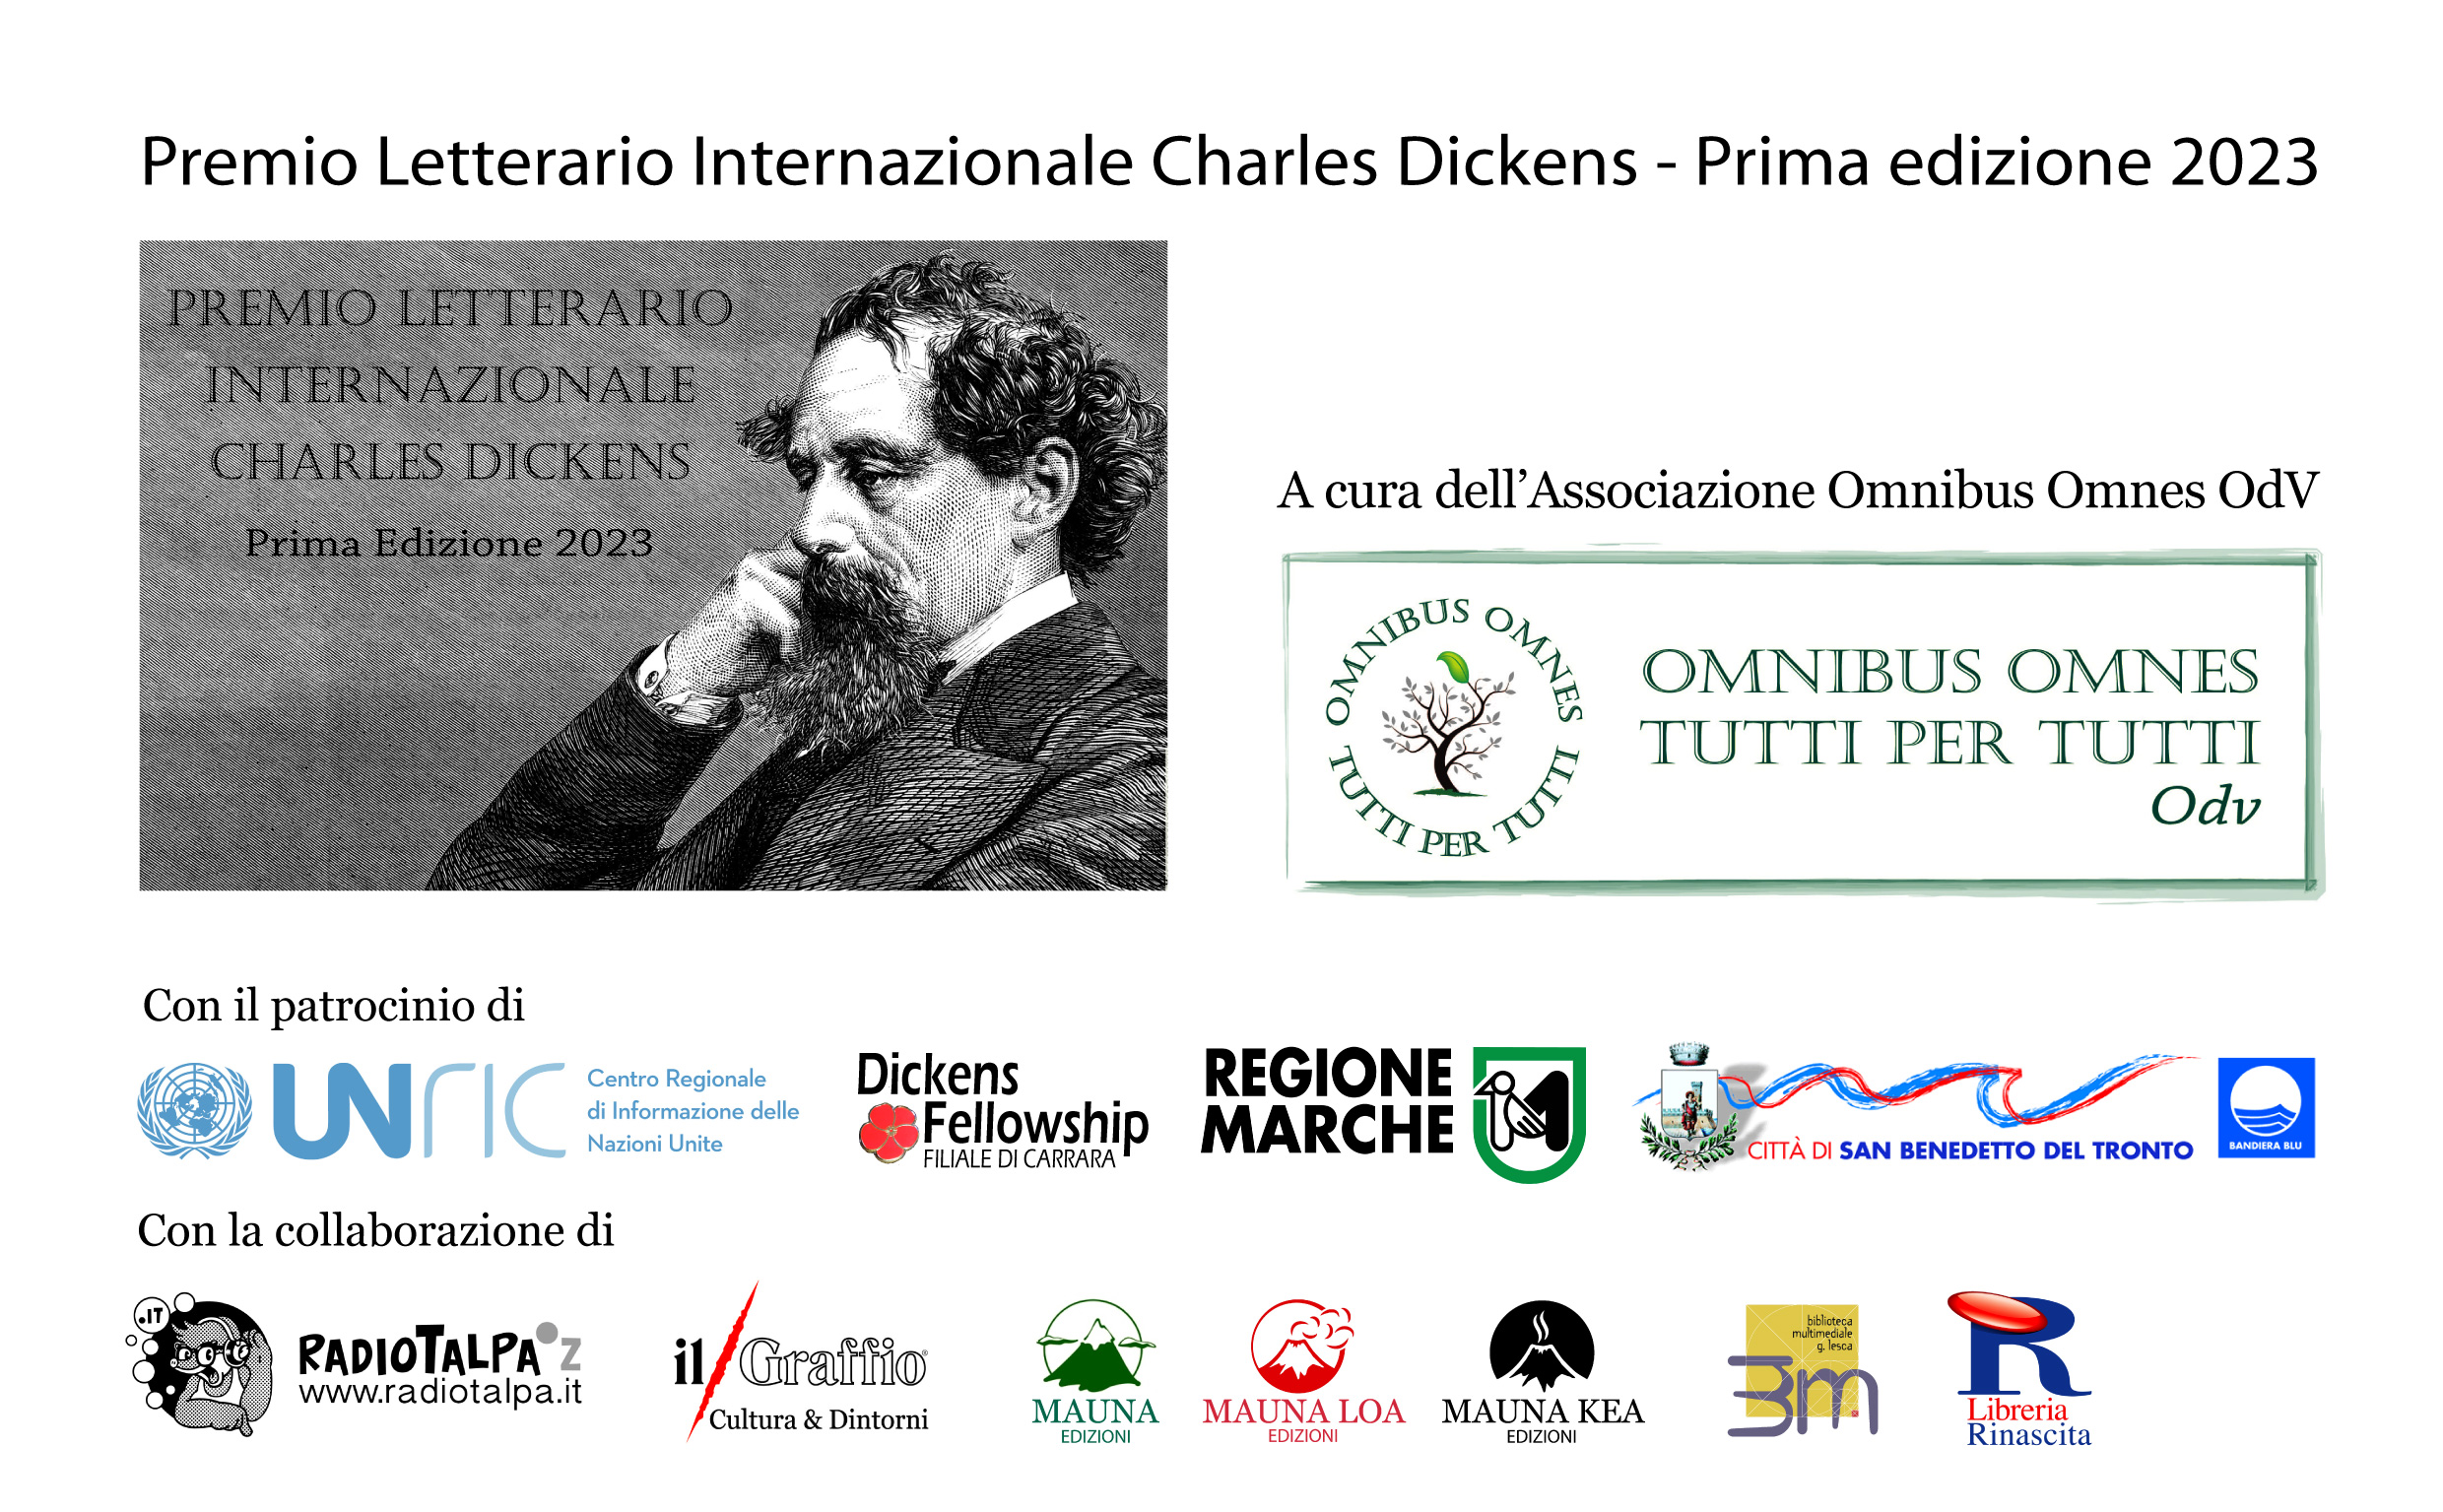 Tante novità per il Premio Letterario Internazionale Charles Dickens